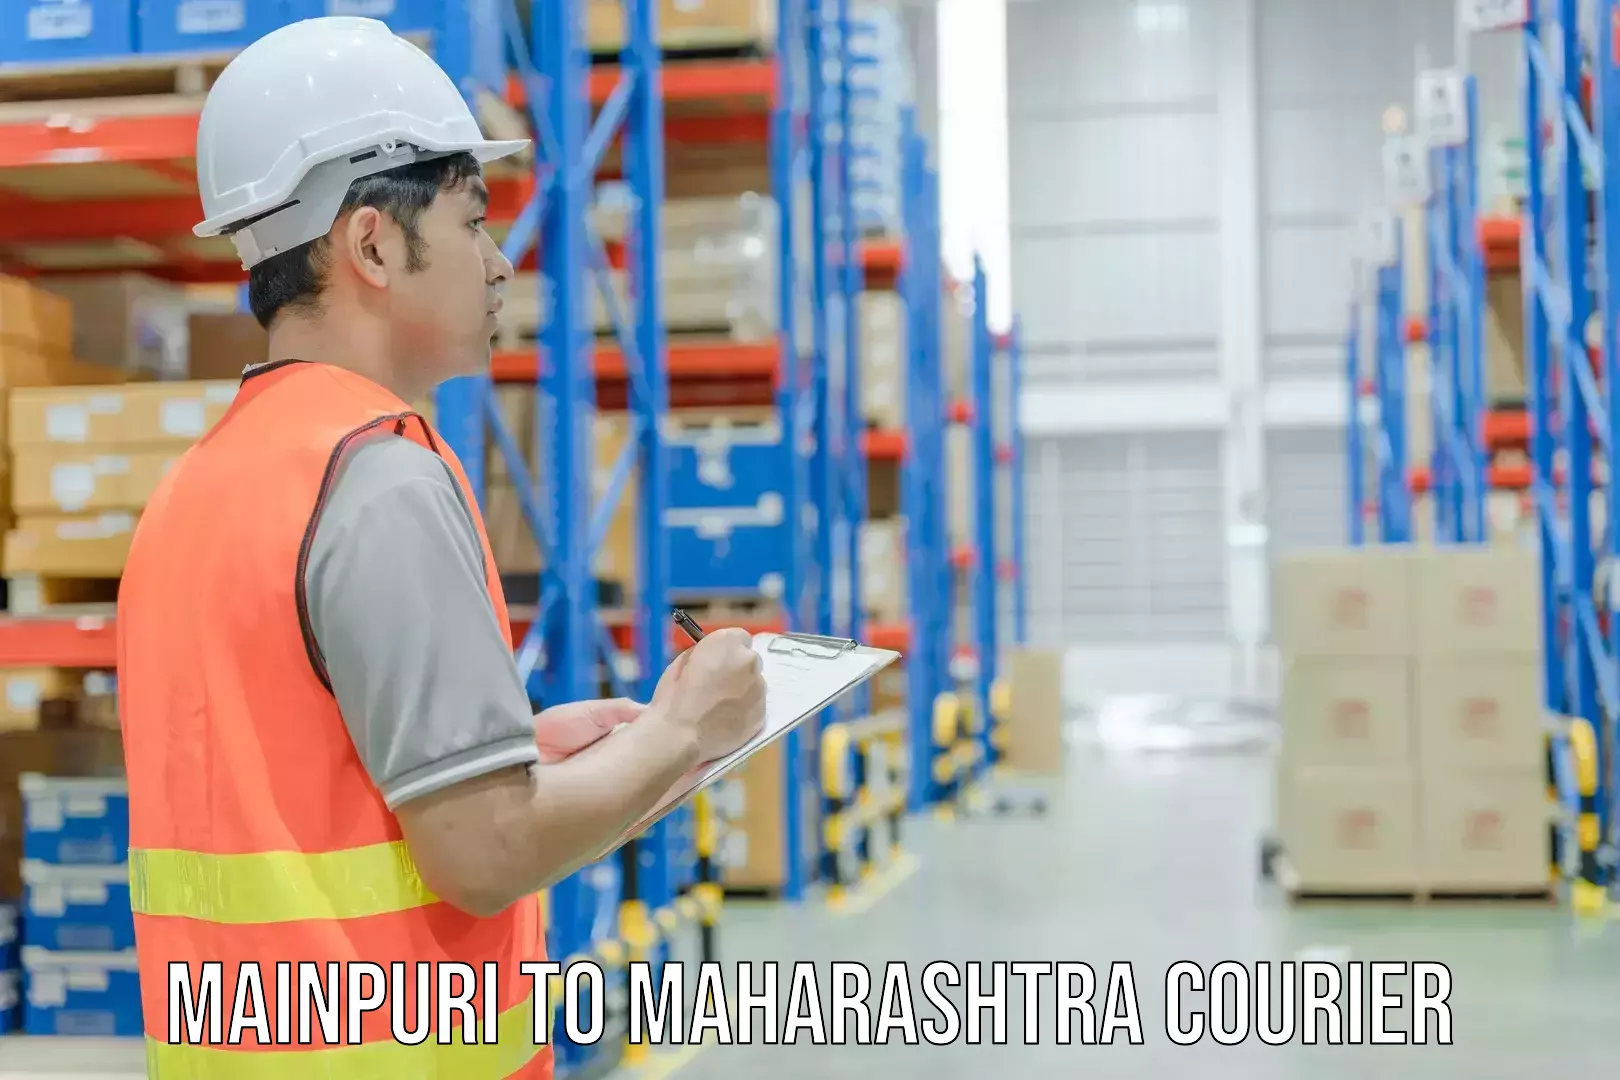 Courier service partnerships Mainpuri to Maharashtra